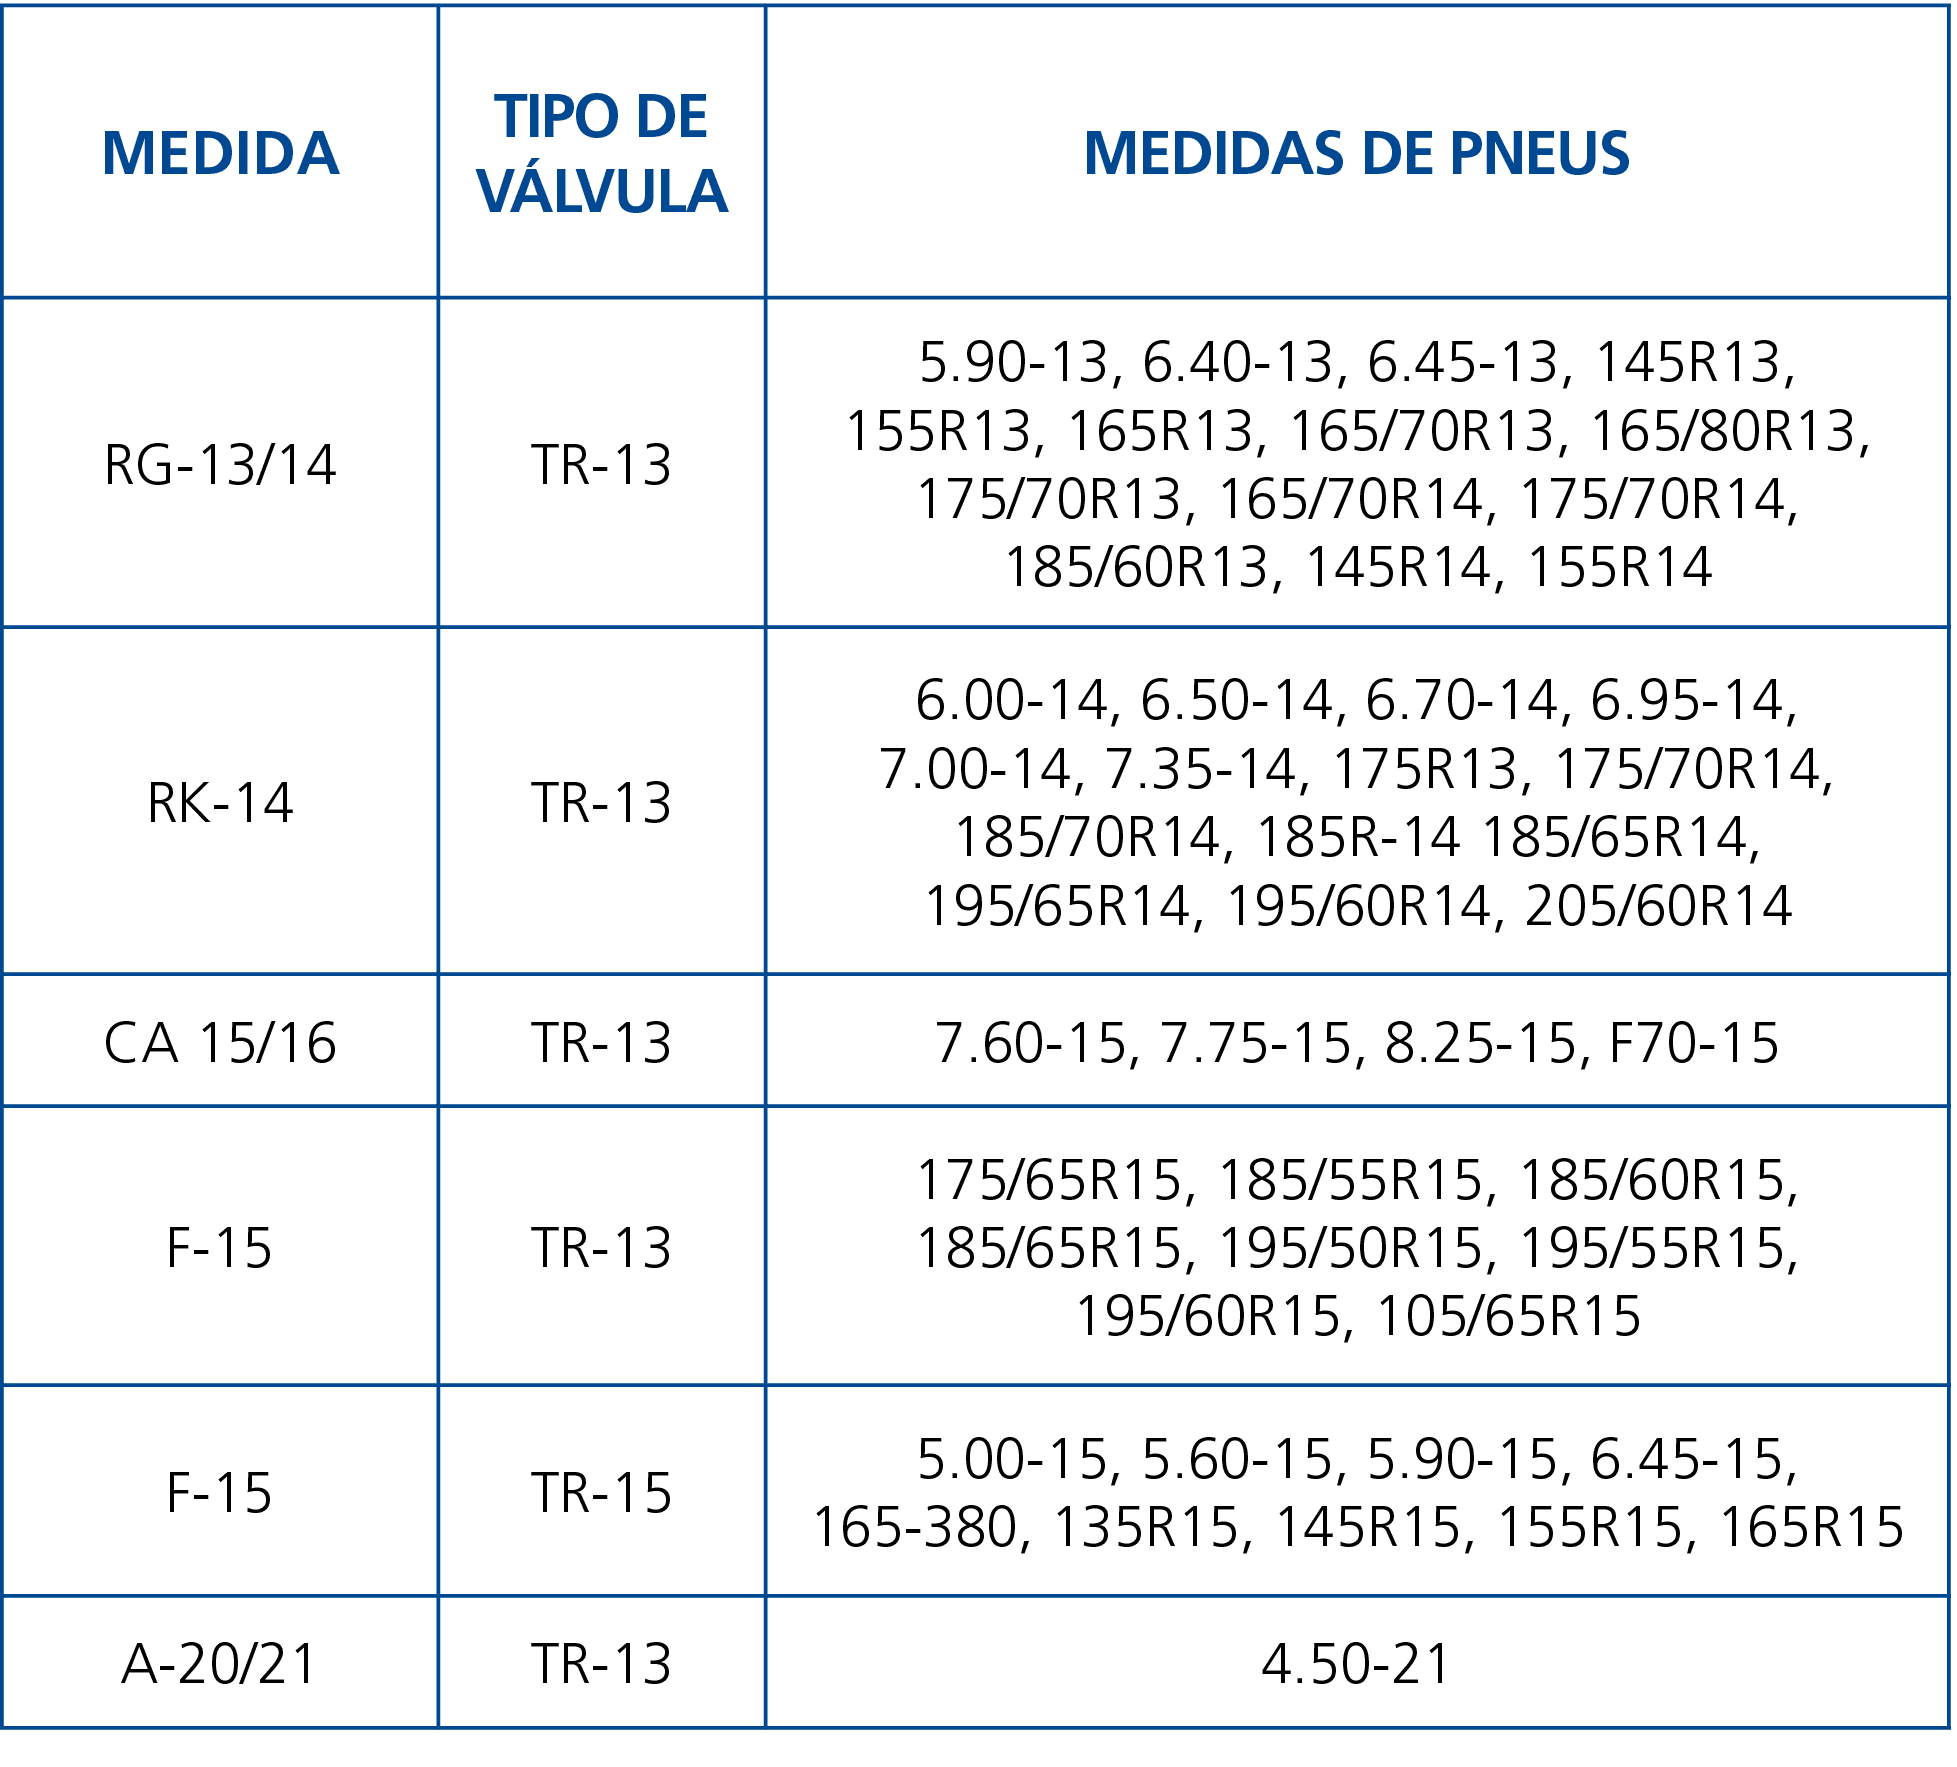 Medida,Tipo de Válvula,Medidas de Pneus,RG-13 14,TR-13,5 90-13, 6 40-13, 6 45-13, 145R13, 155R13, 165R13, 165 70R13,    